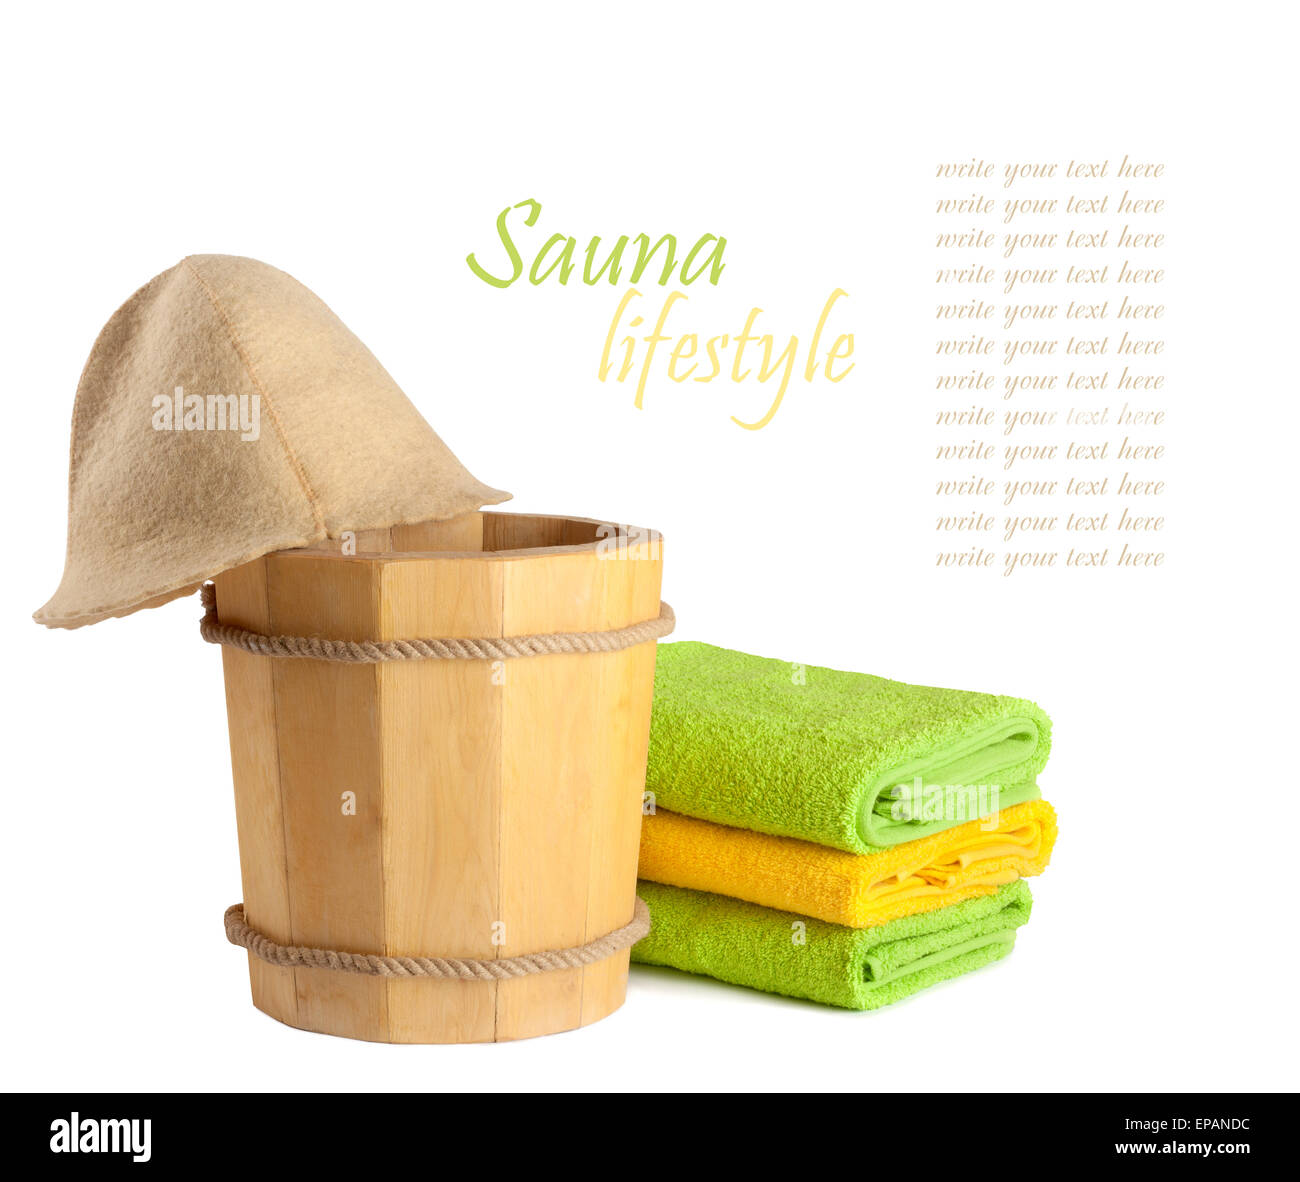 Holzeimer mit Schöpfkelle für die Sauna und den Stapel Handtücher Stockfoto